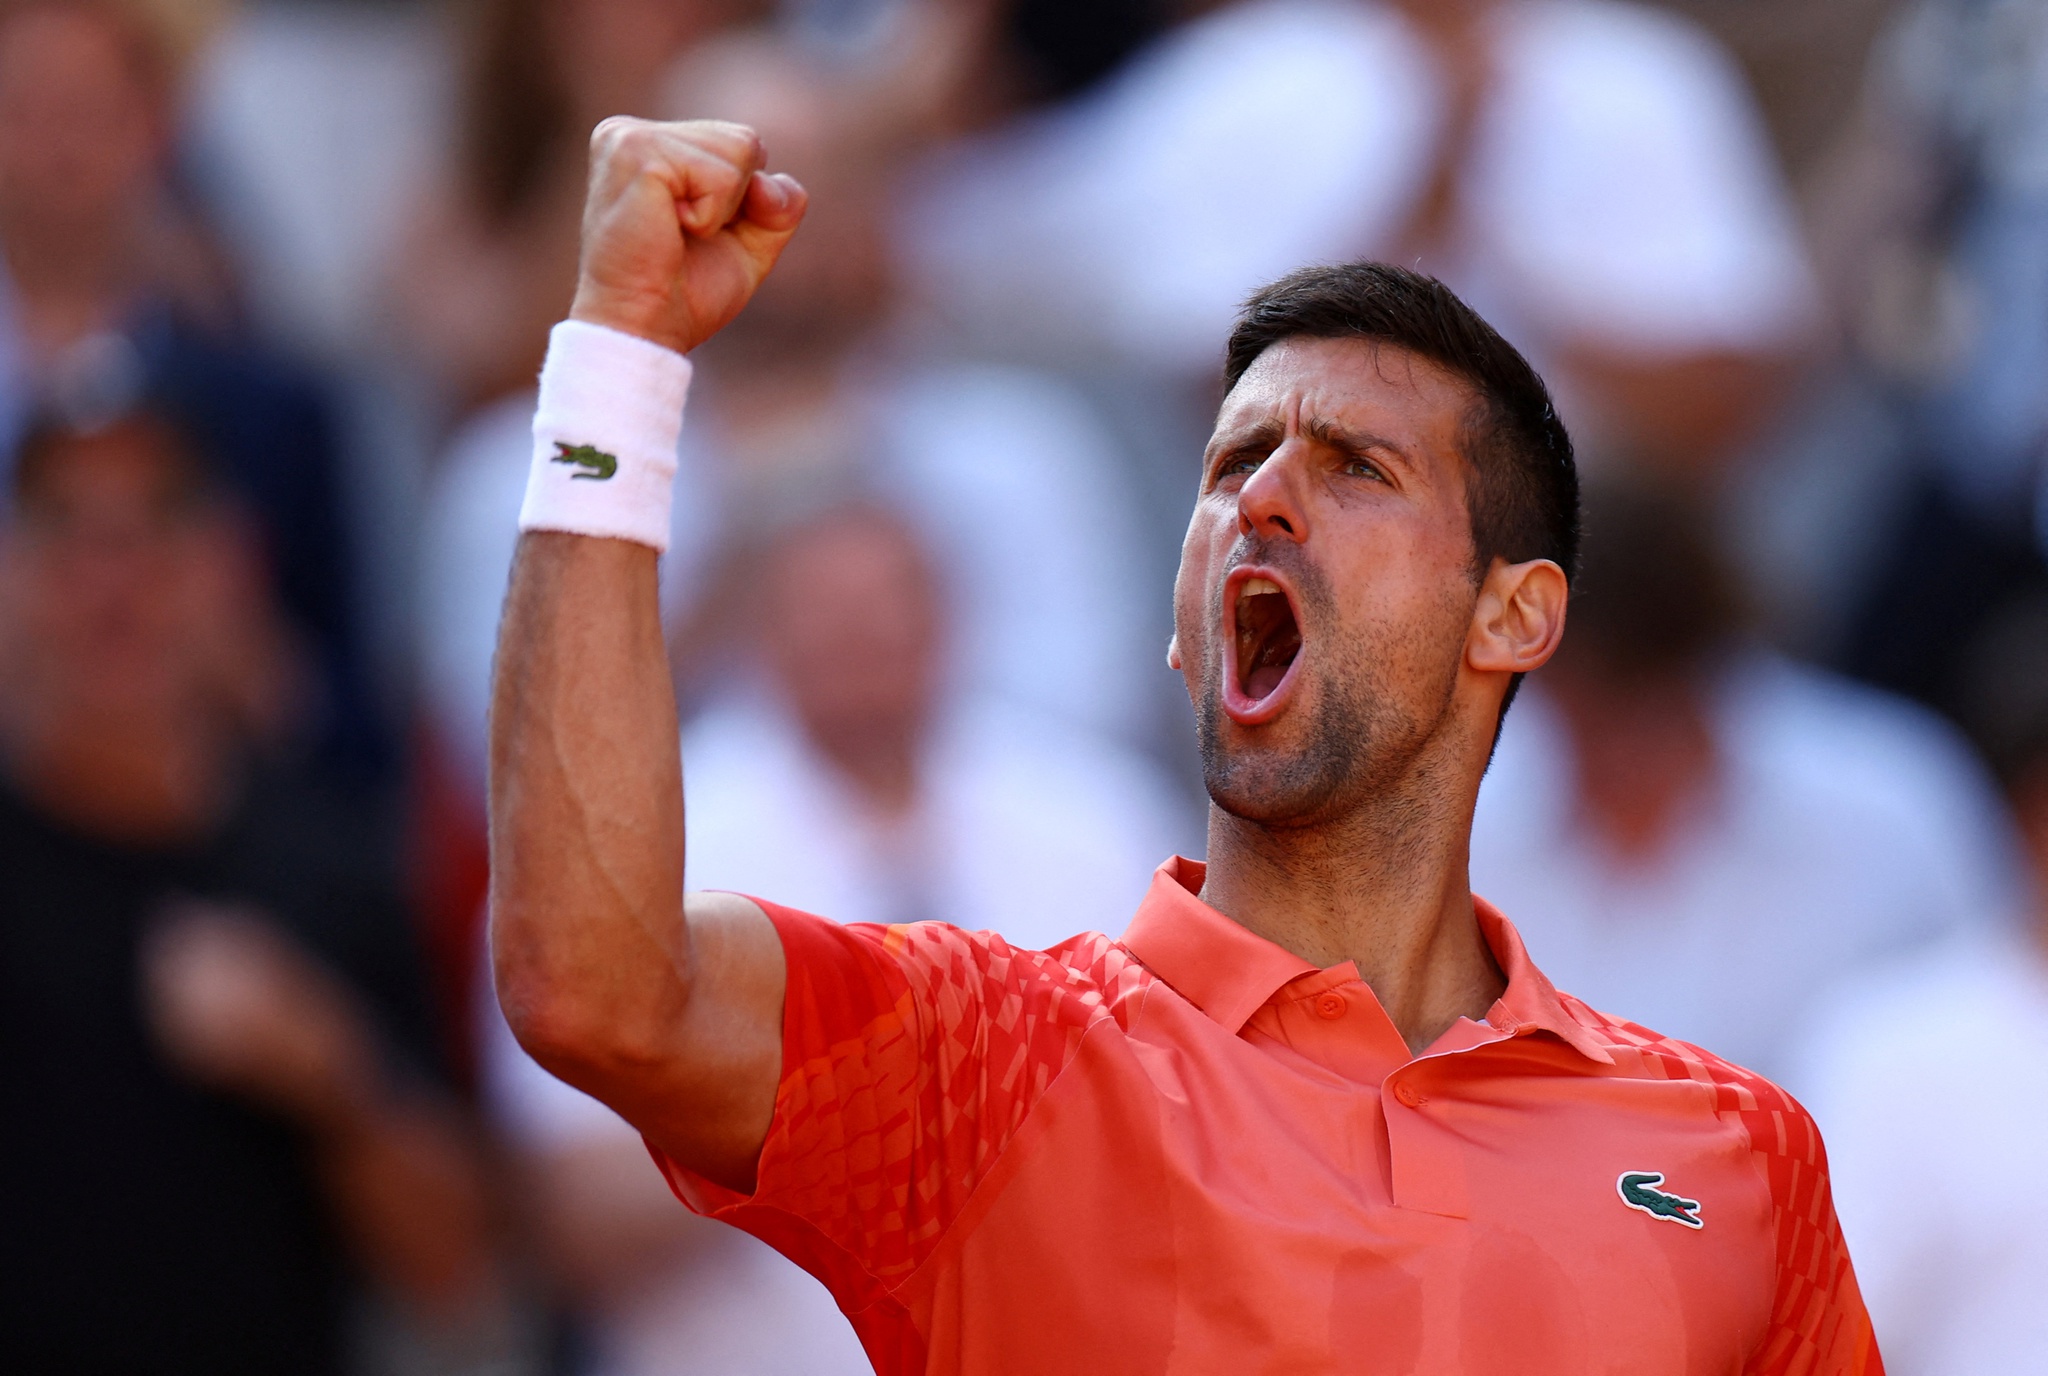 Alcaraz x Djokovic na semi de Roland Garros: horário e onde assistir